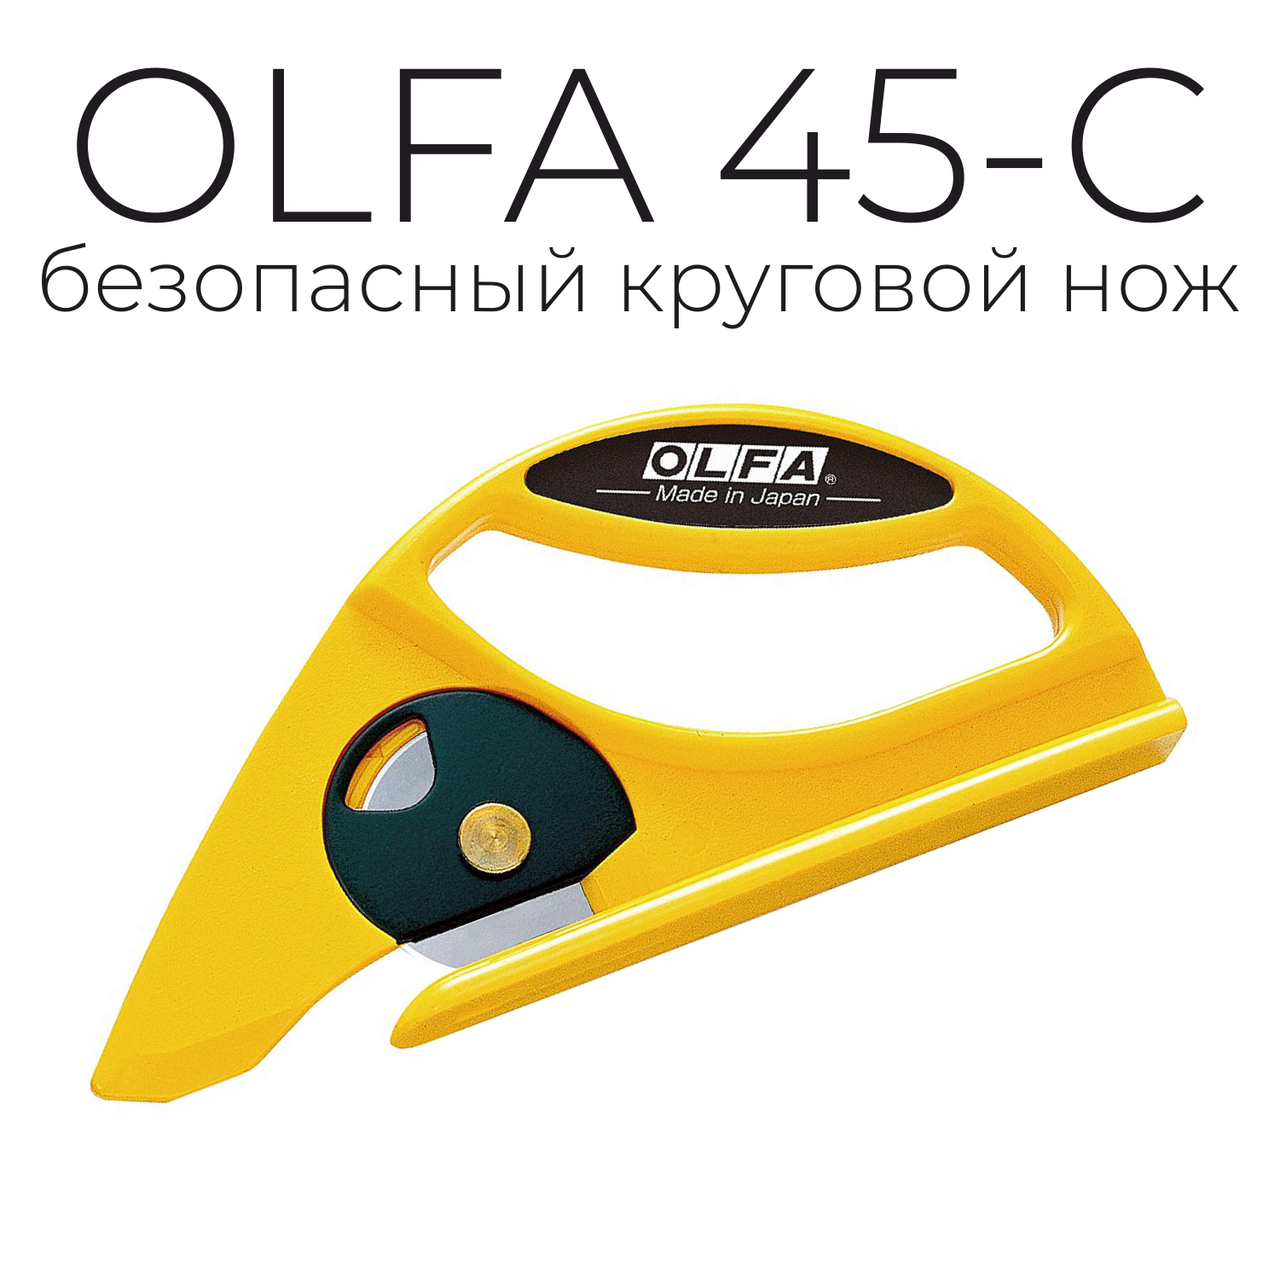 Нож OLFA 45-C для напольных покрытий с круговым лезвием